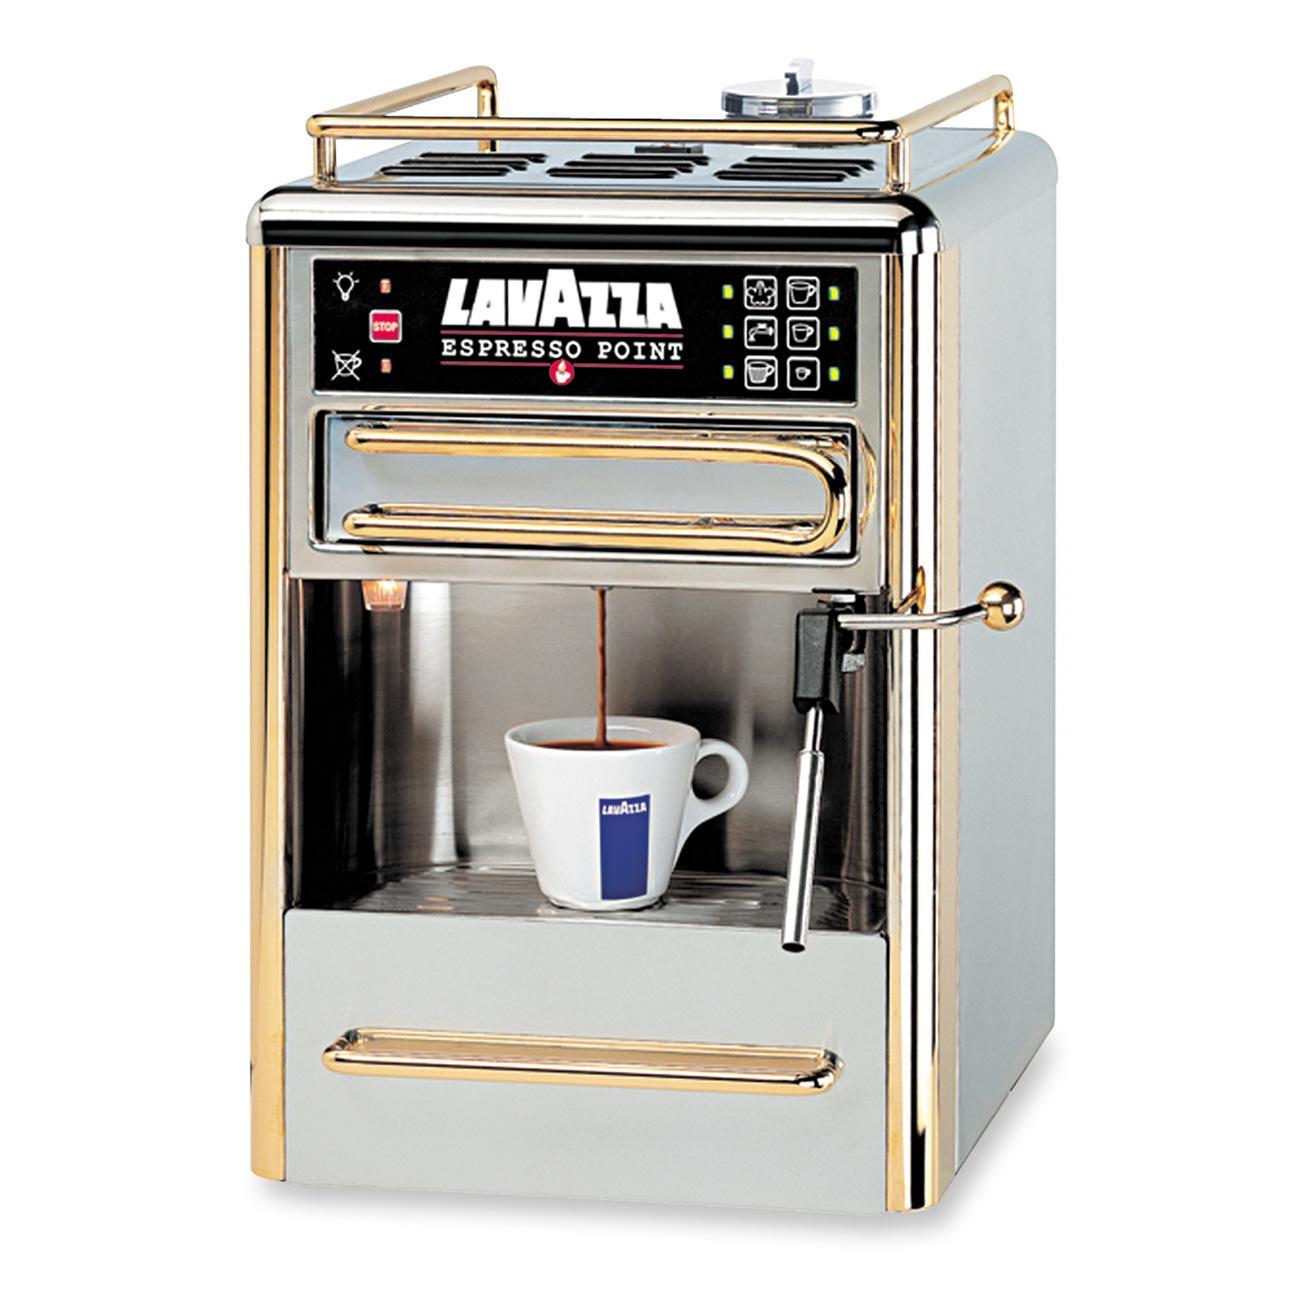 How To Use The Lavazza Espresso Machine